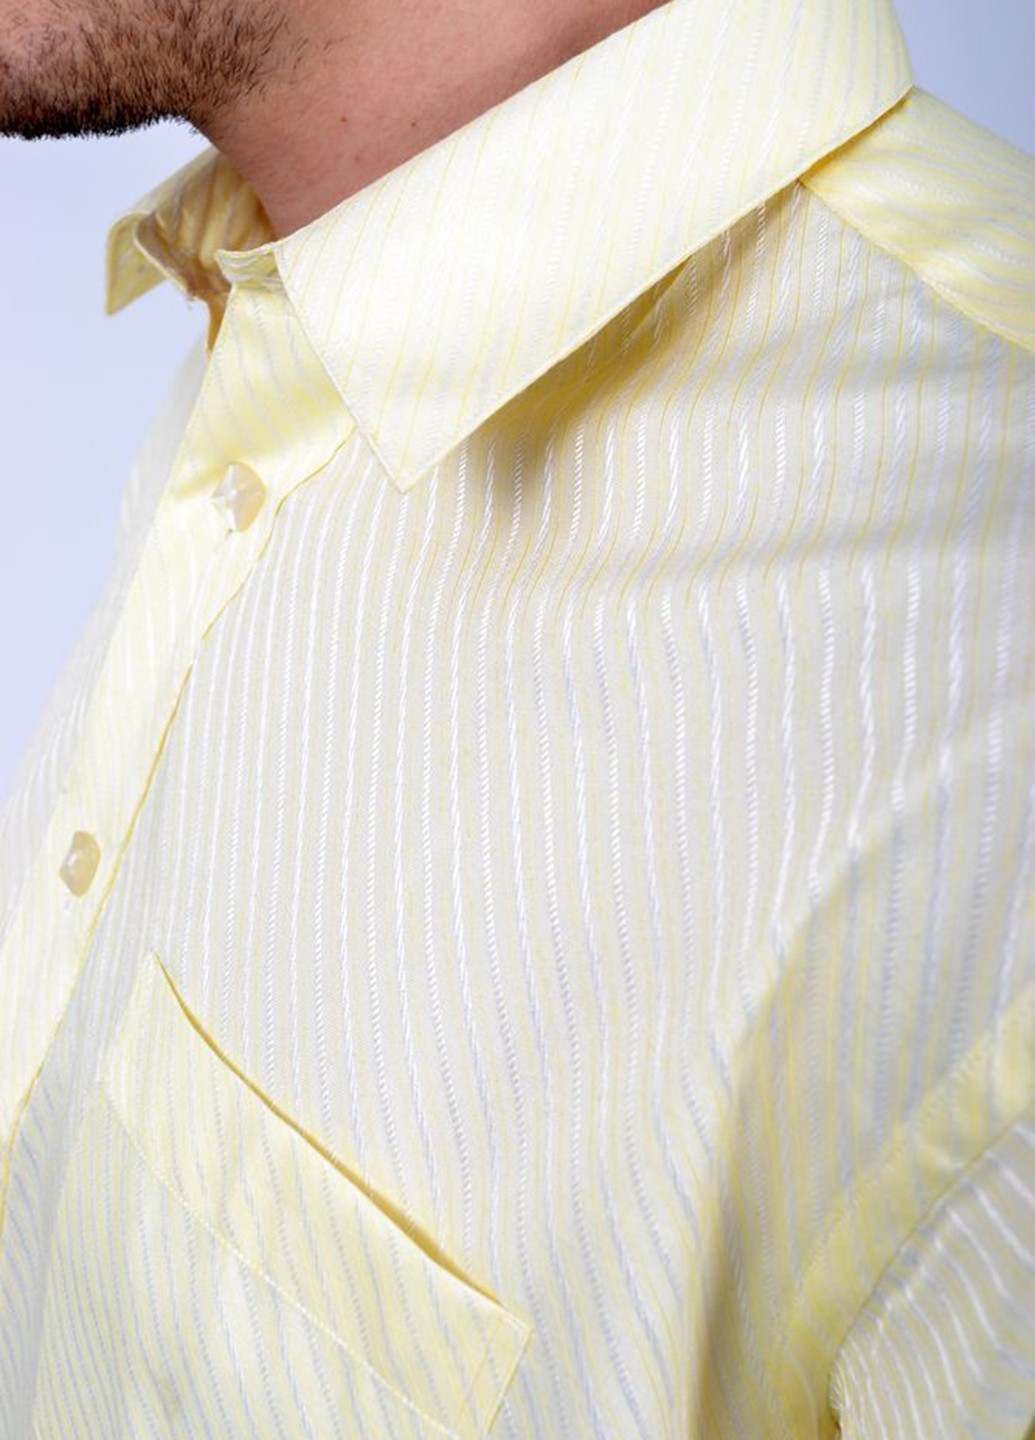 Желтая кэжуал рубашка однотонная Ager с длинным рукавом